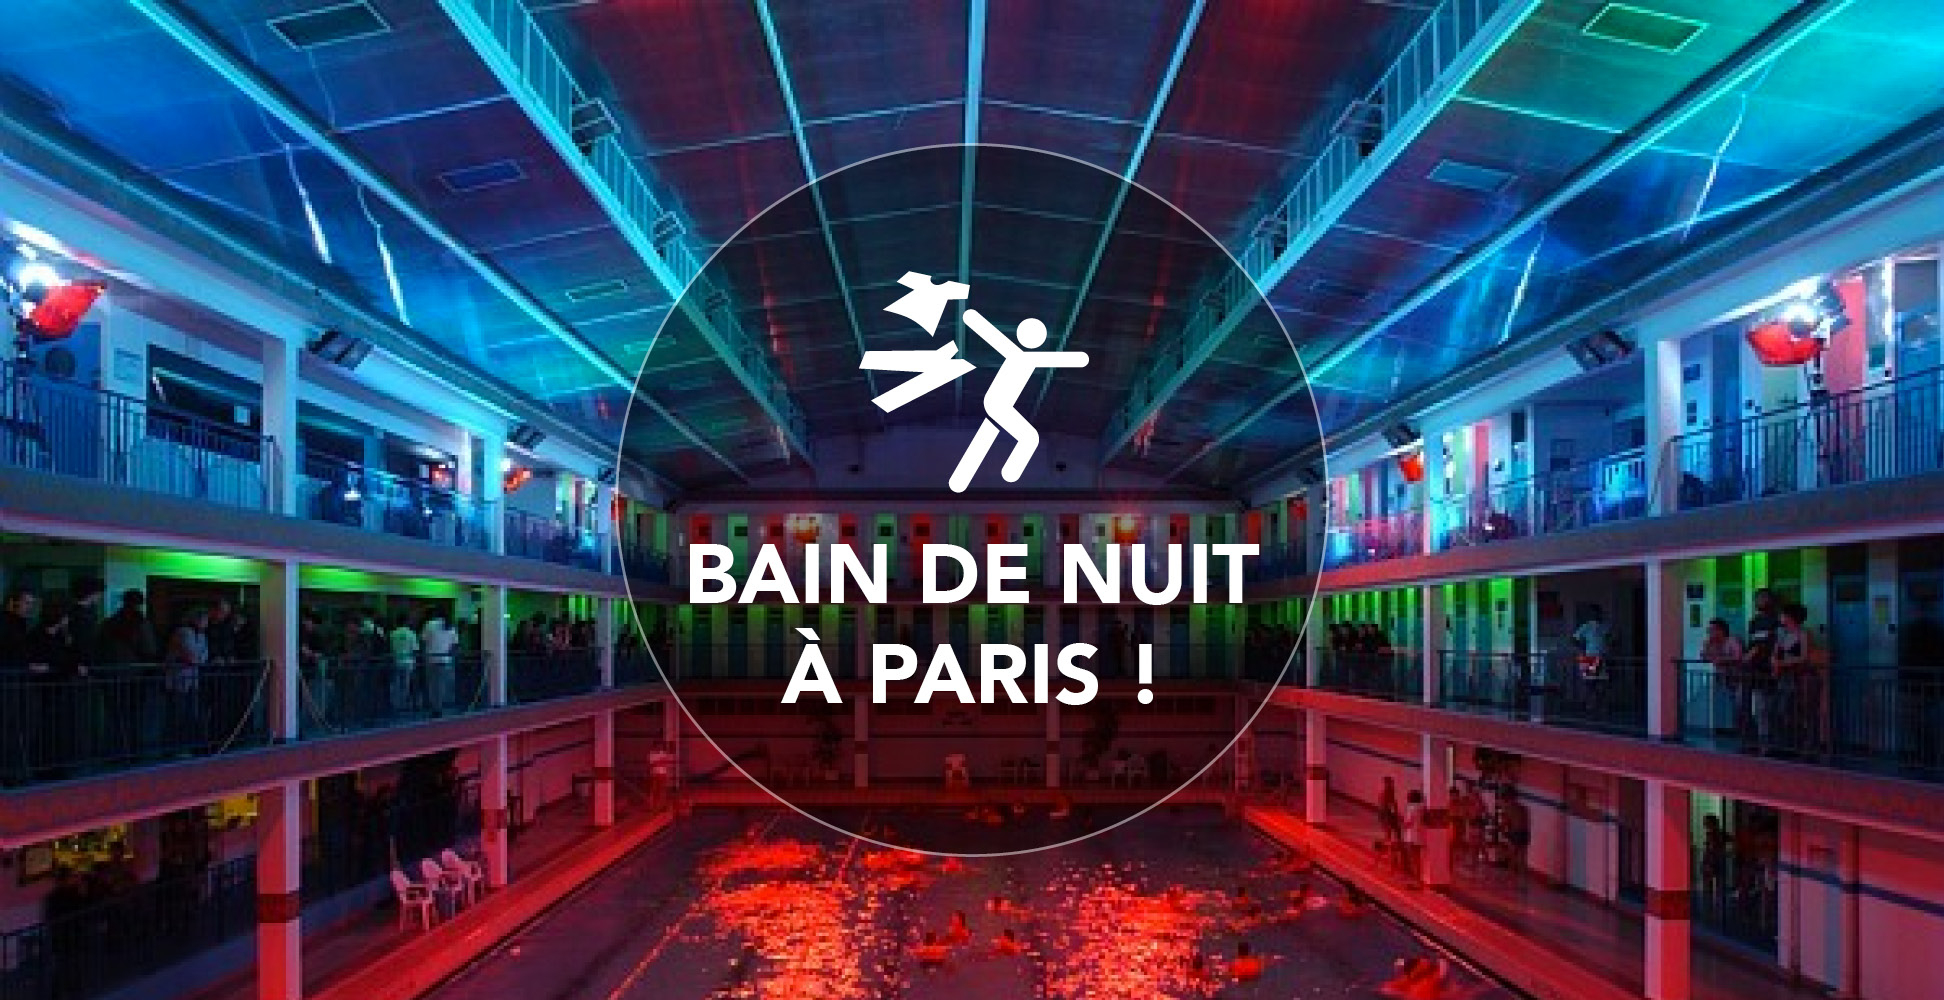 Piscine De Pontoise - Bain De Nuit A Paris! | The Urban Activist concernant Piscine De Pontoise